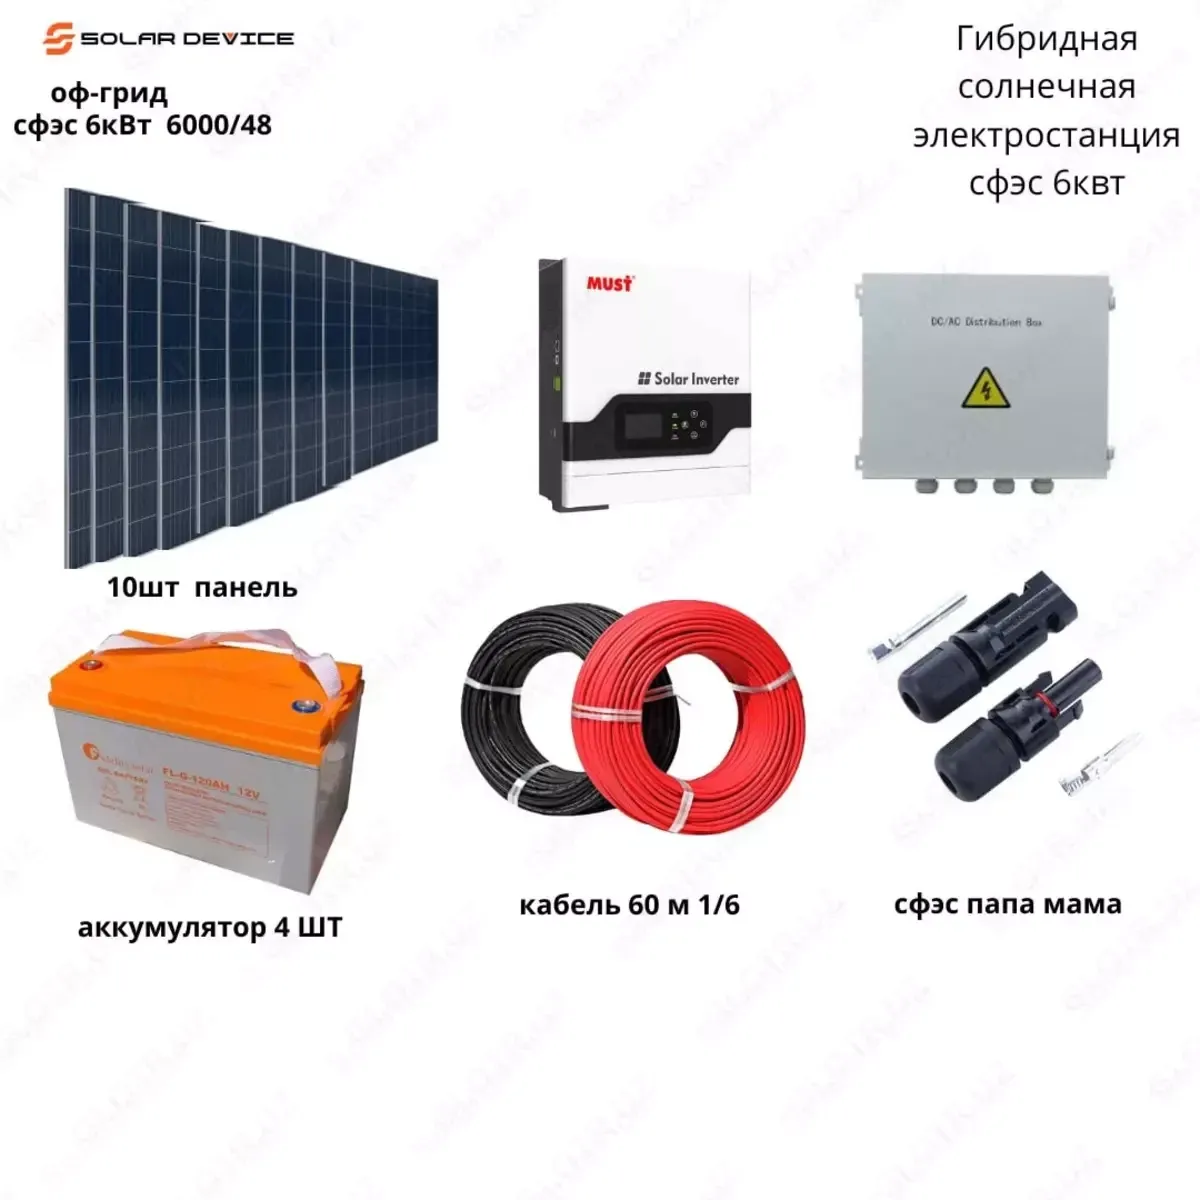 Гибридная солнечная электростанция "SOLAR" СФЭС (6 кВт)#1